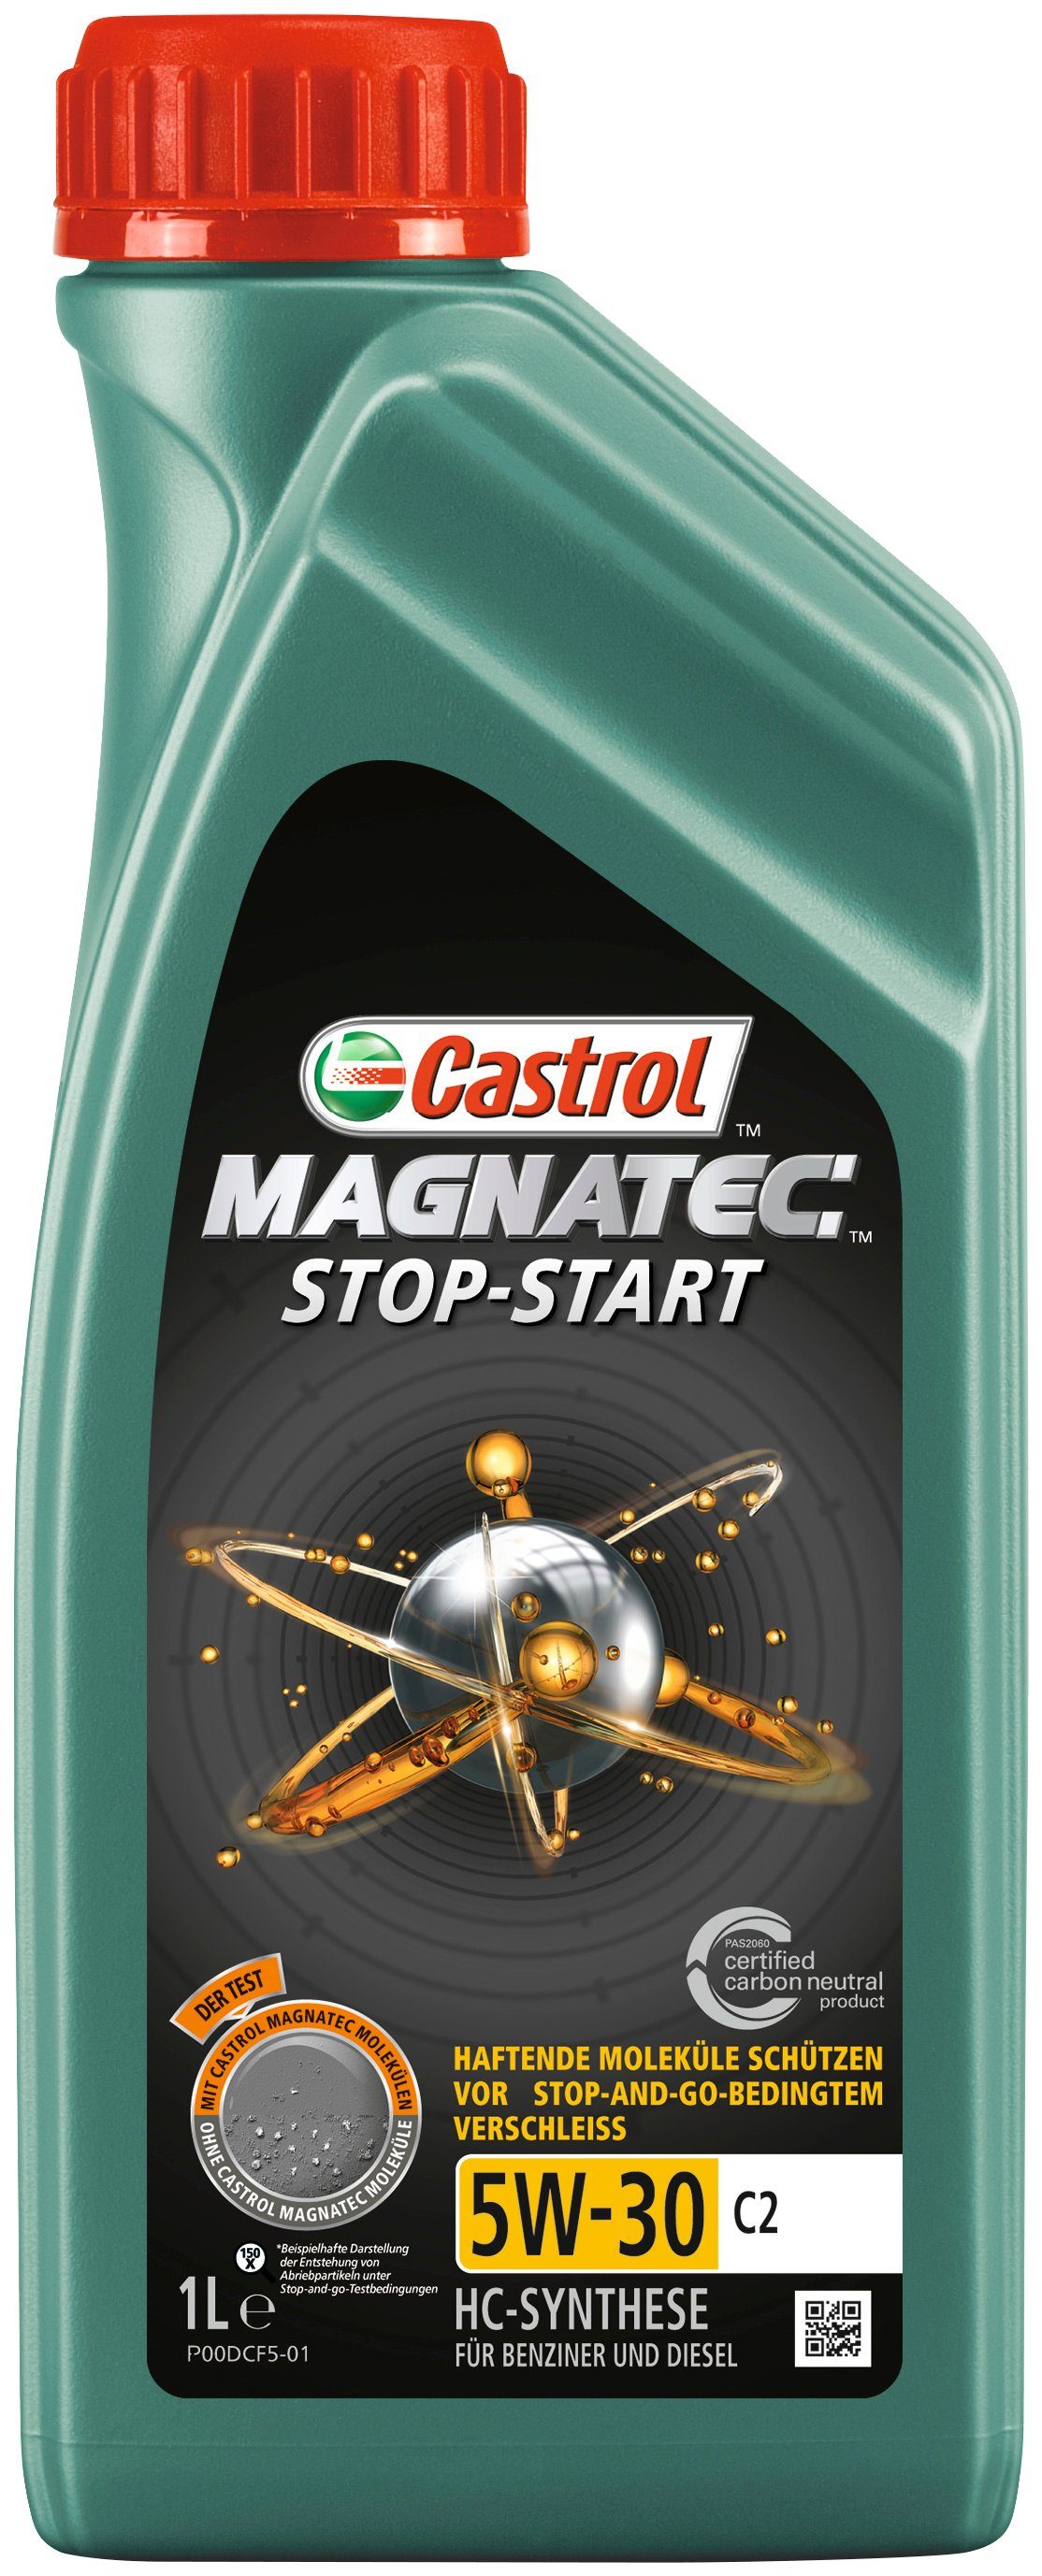 Castrol Motoröl MAGNATEC Stop-Start 5W-30 C2, 1 Liter, für PKW